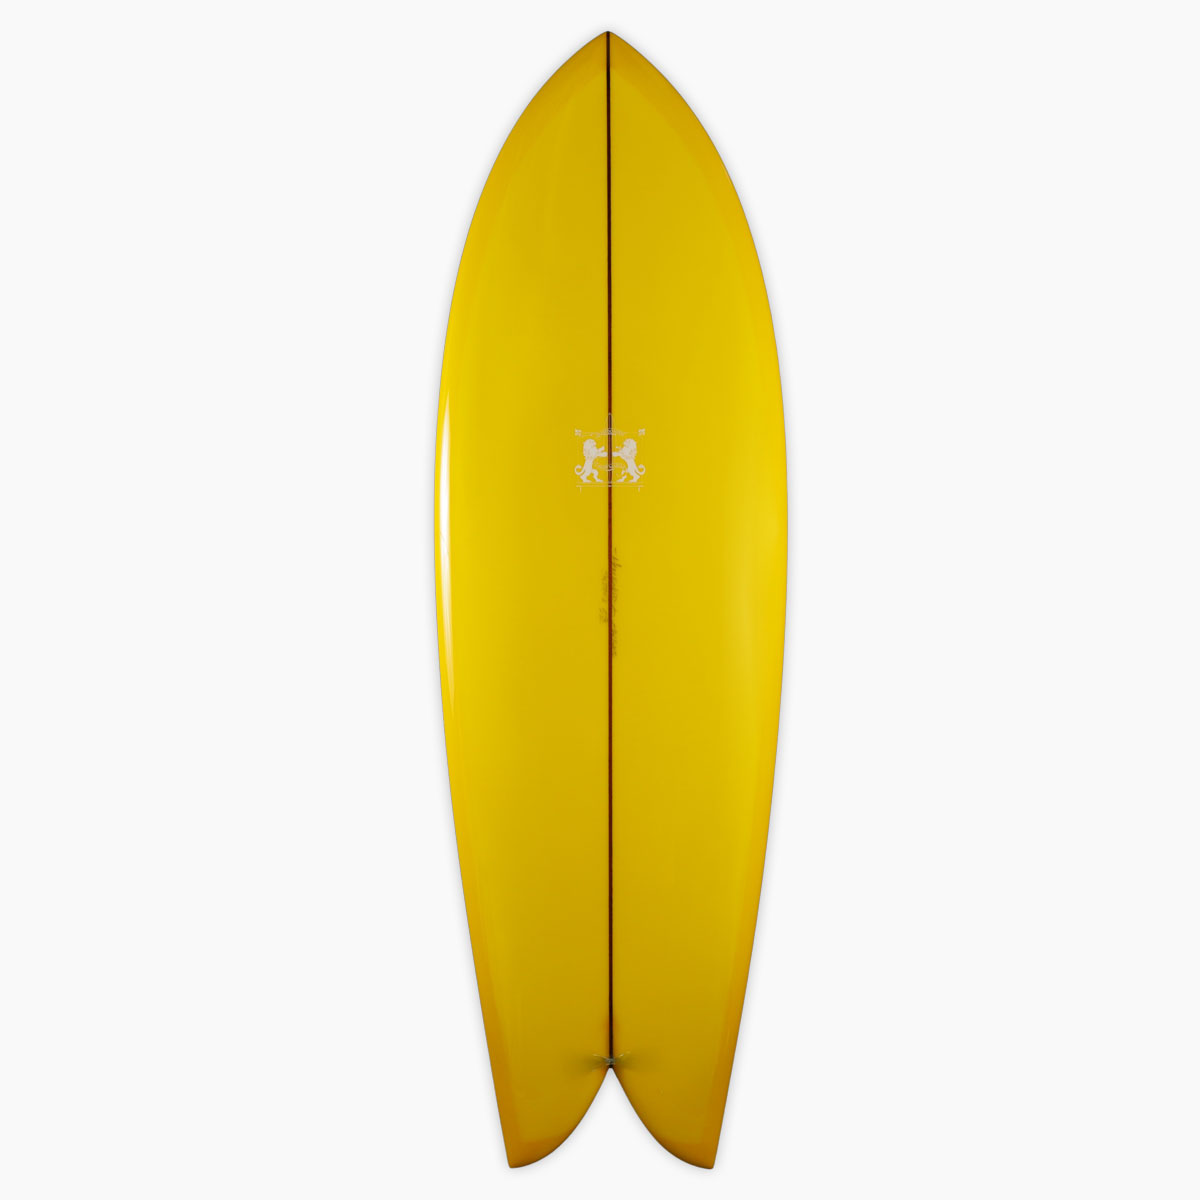 ラリー メイビル サーフボード クラッシック フィッシュ LARRY MABILE SURFBOARD CLASSIC FISH 5'8'' フィッシュ 即納